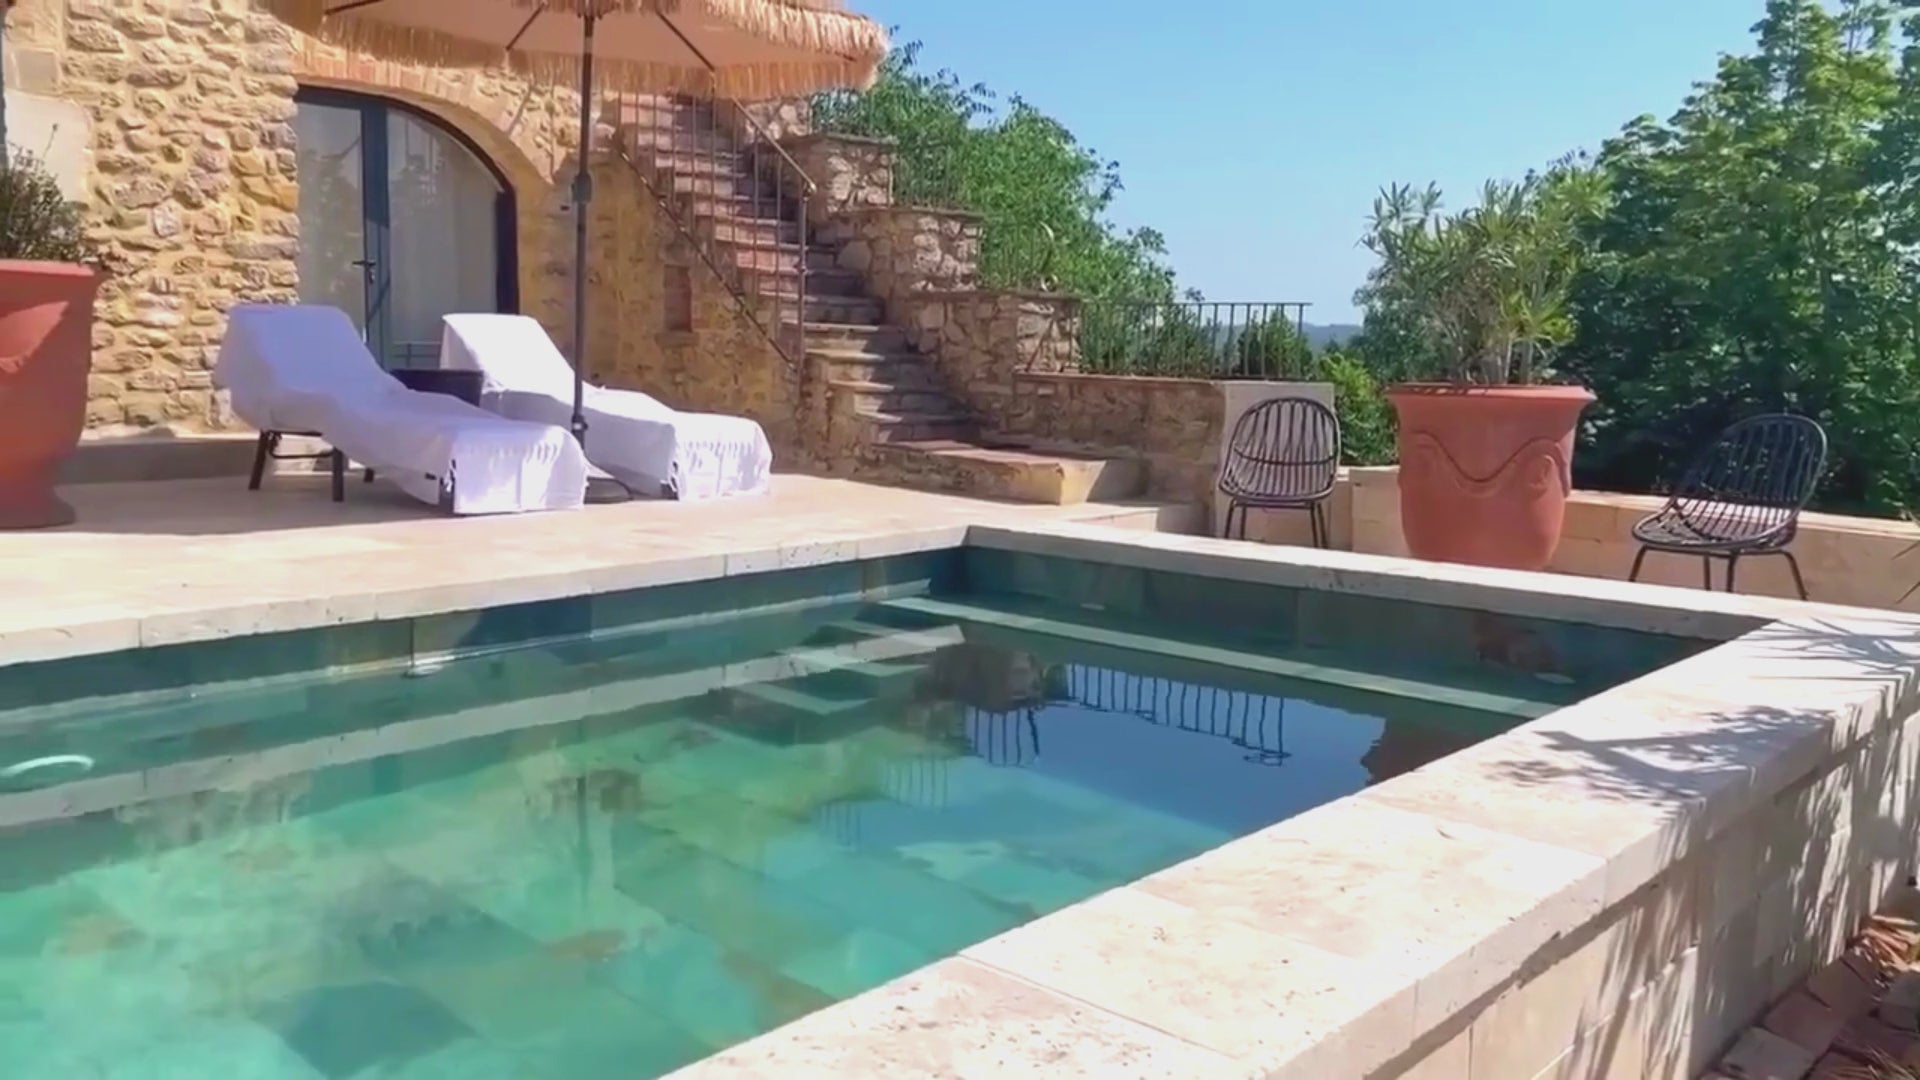 Load video: gite gard avec piscine, gite de charme jacuzzi privatif, chambre avec jacuzzi prive